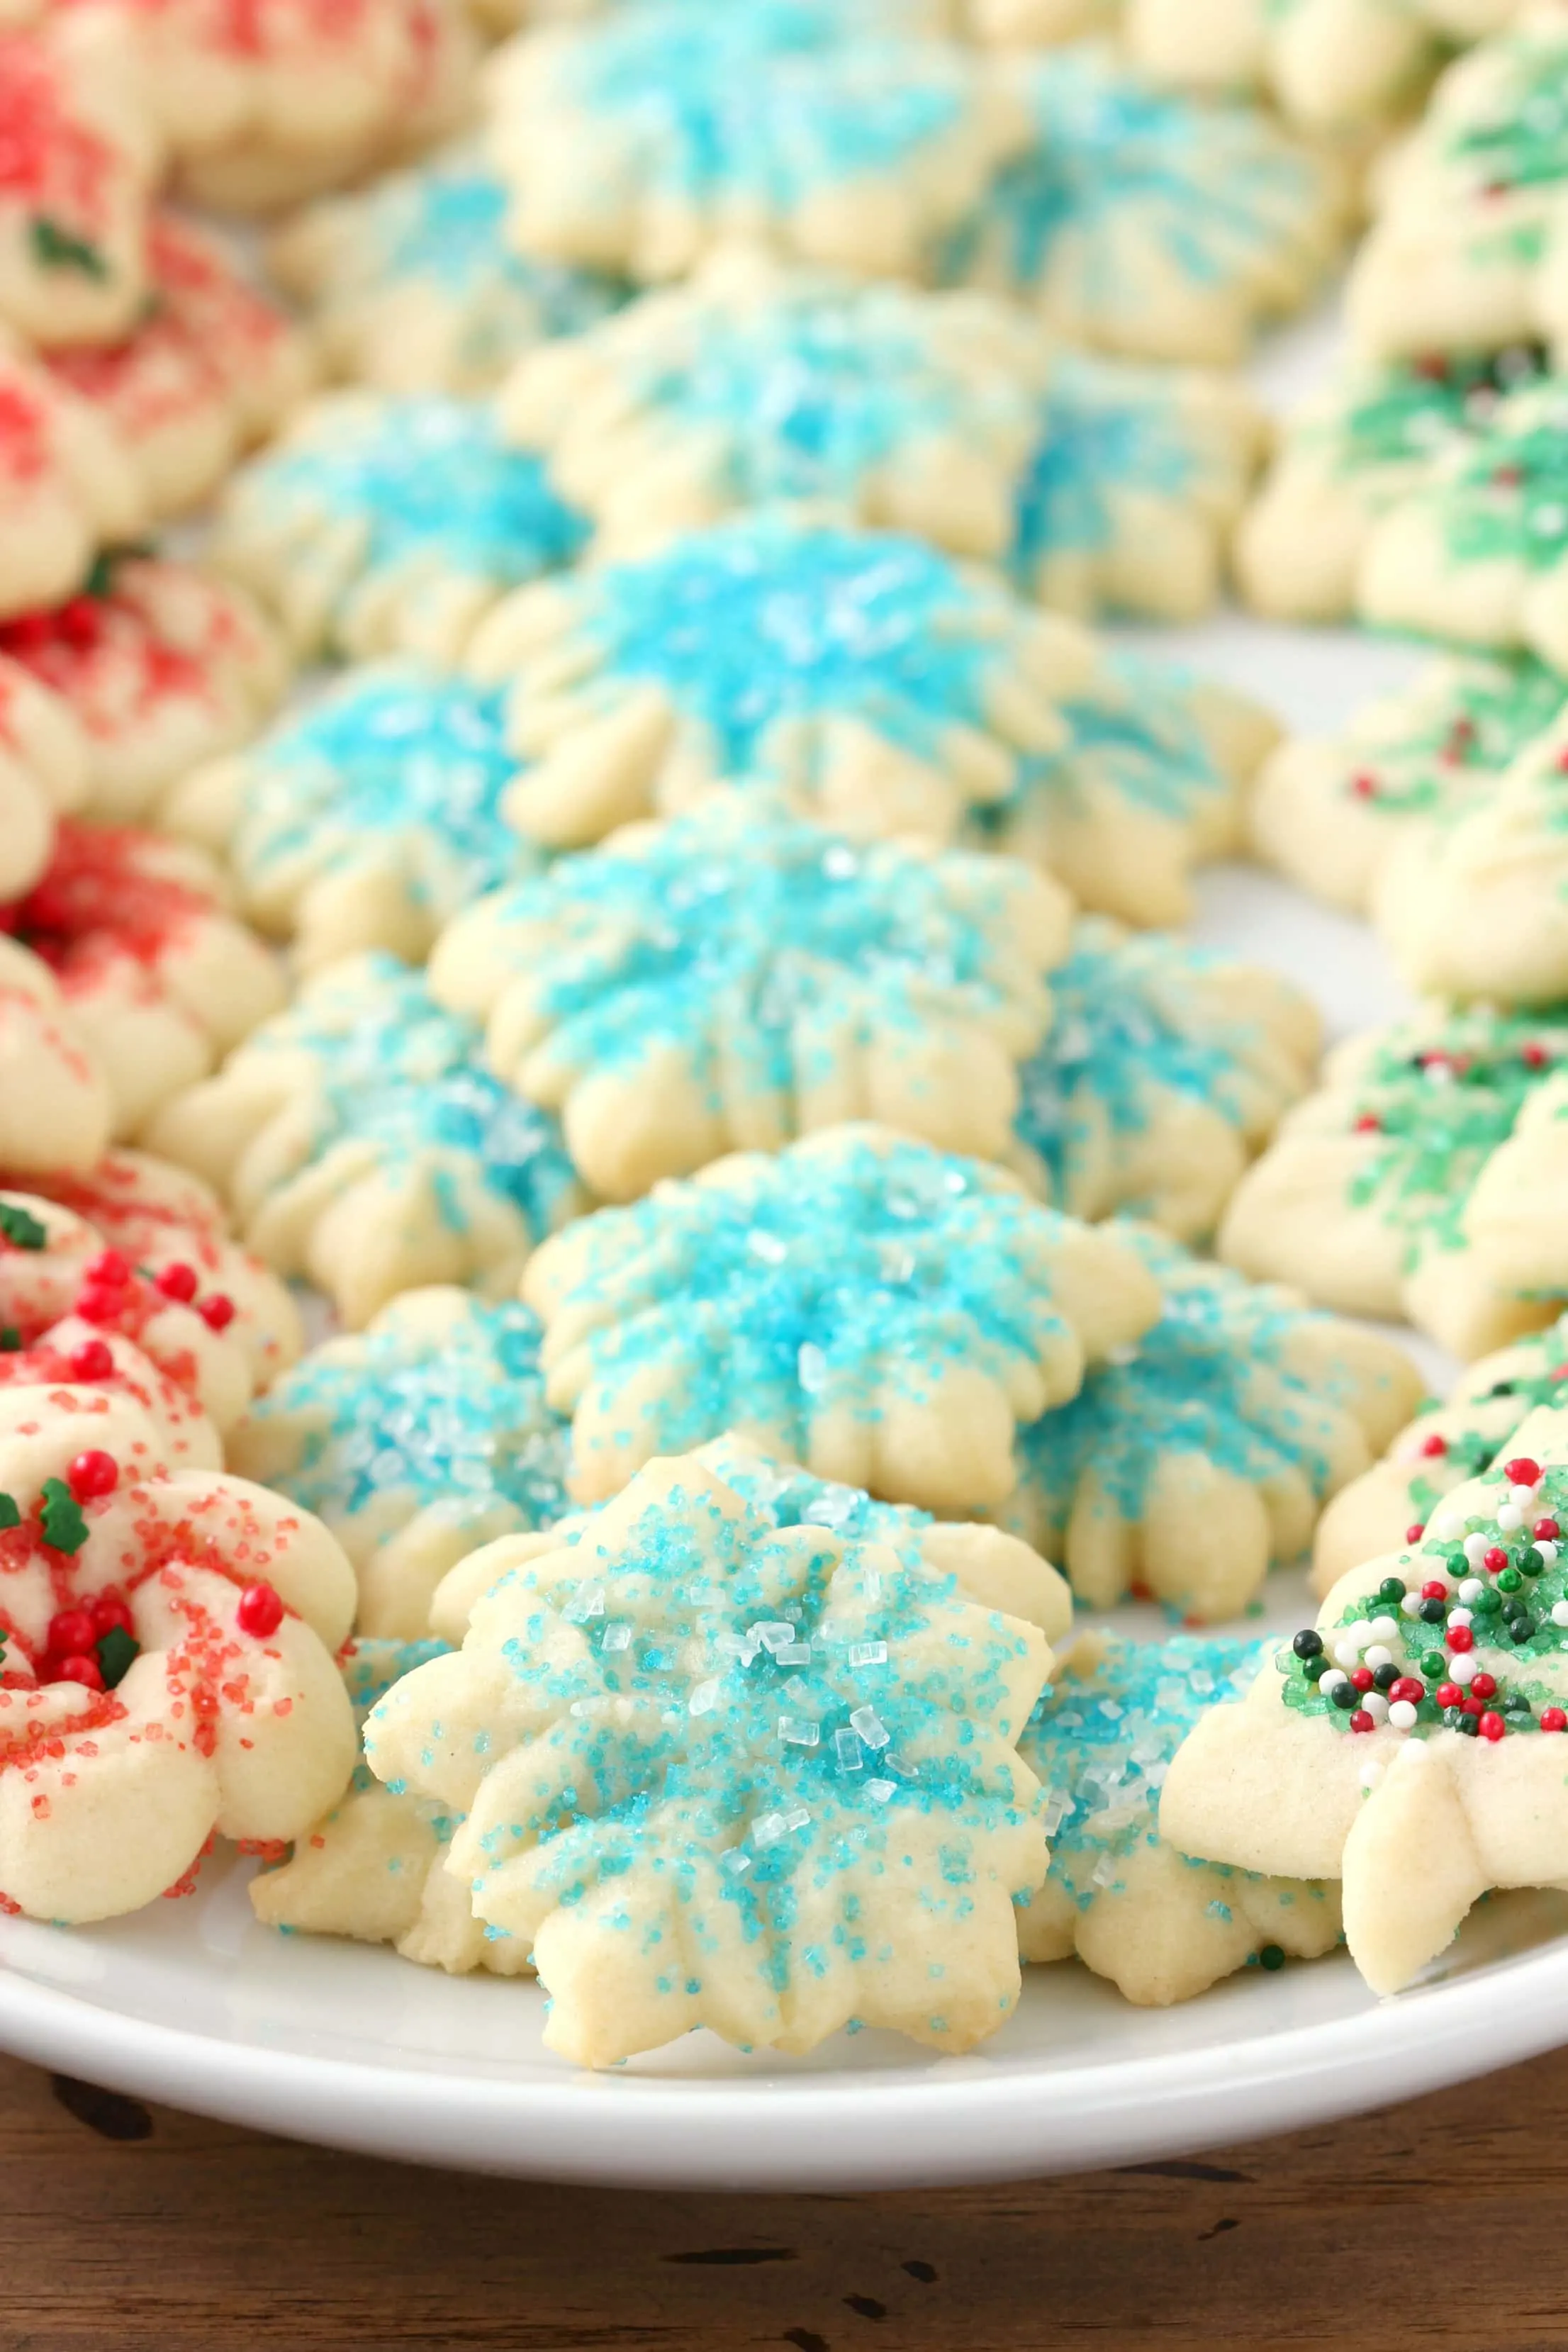 https://www.a-kitchen-addiction.com/wp-content/uploads/2016/11/spritz-cookies-vert-UC.jpg.webp